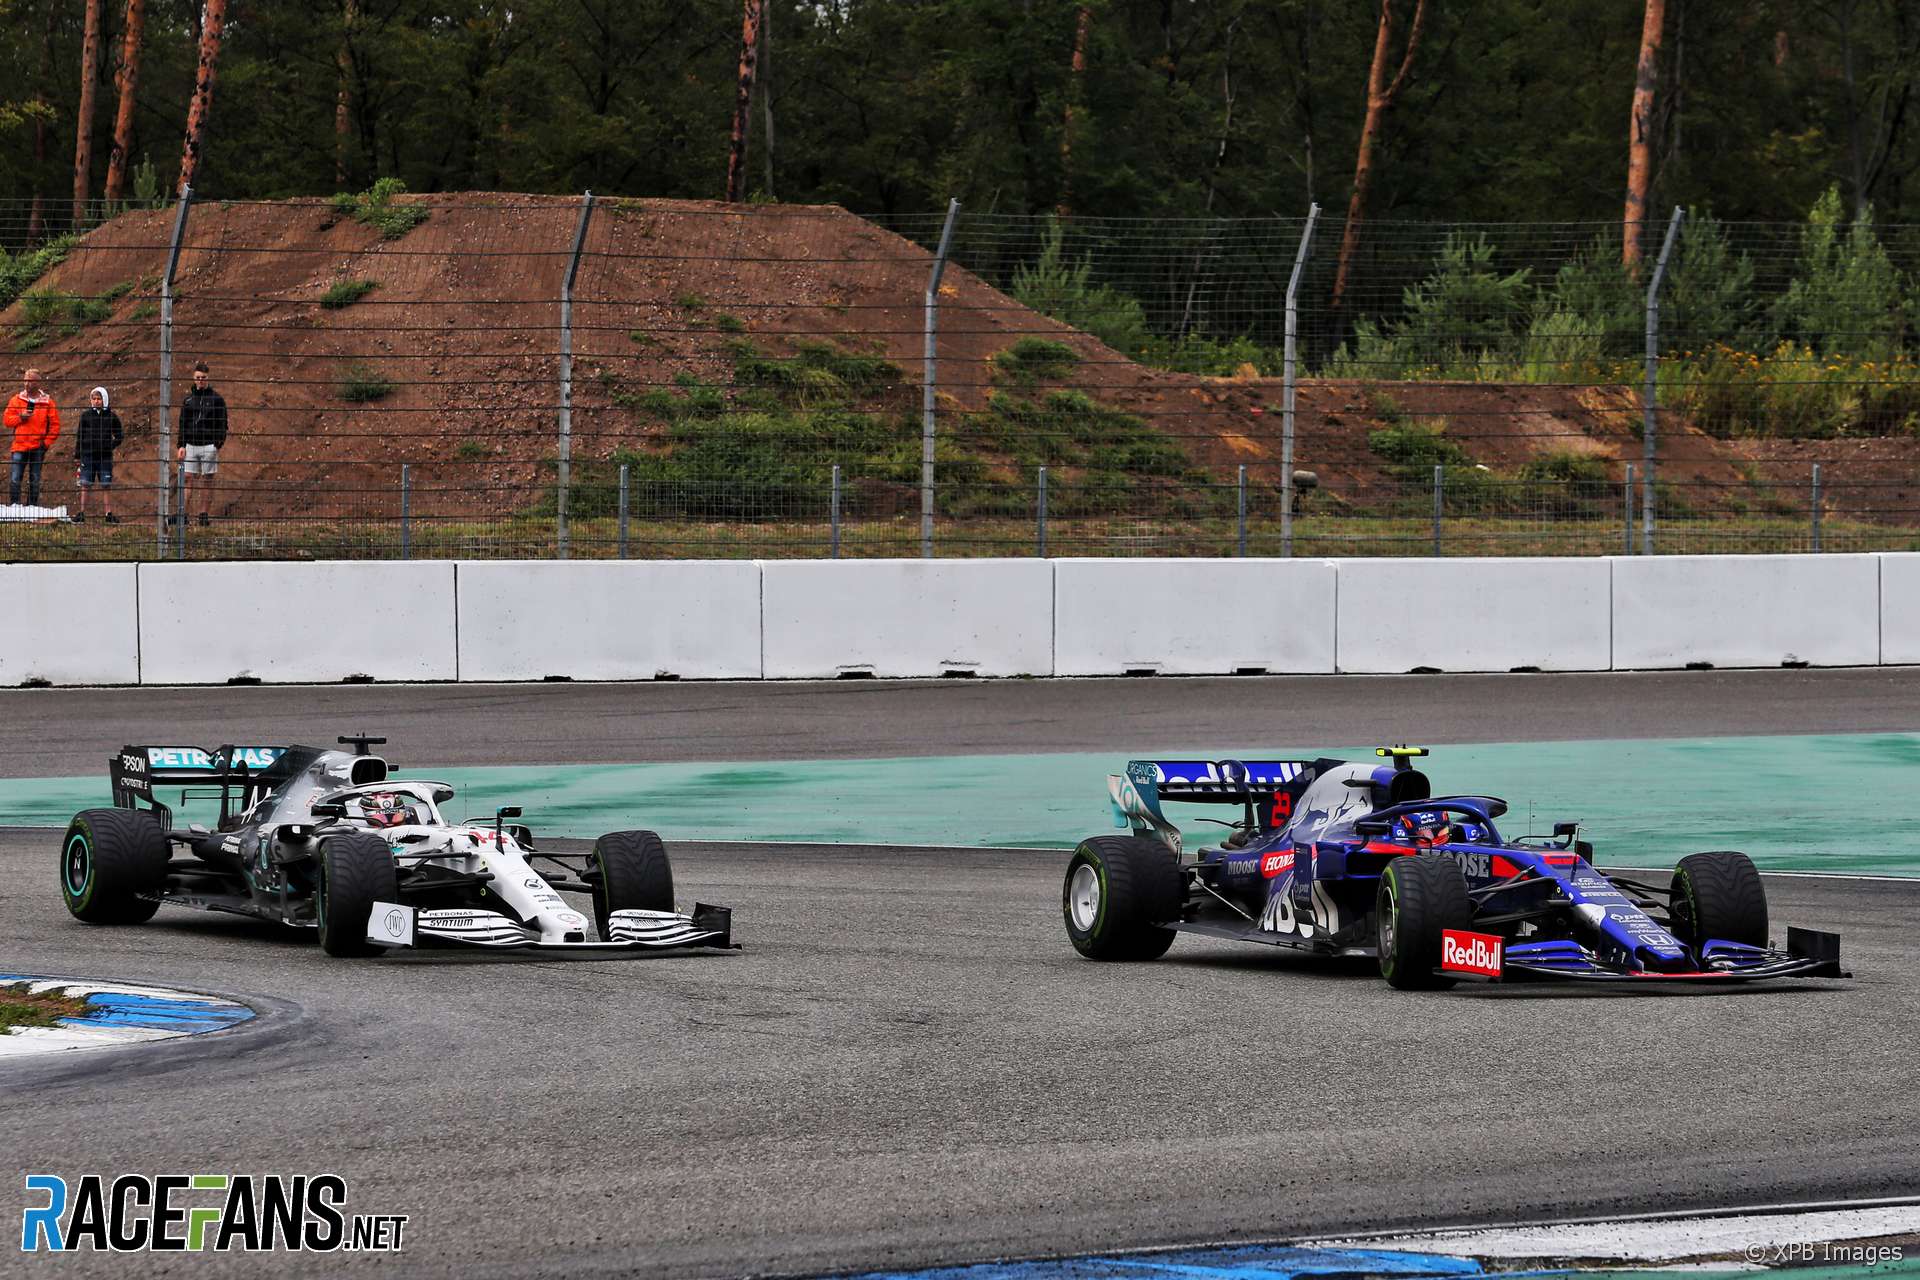 Alexander Albon, Toro Rosso, Hockenheimring, 2019